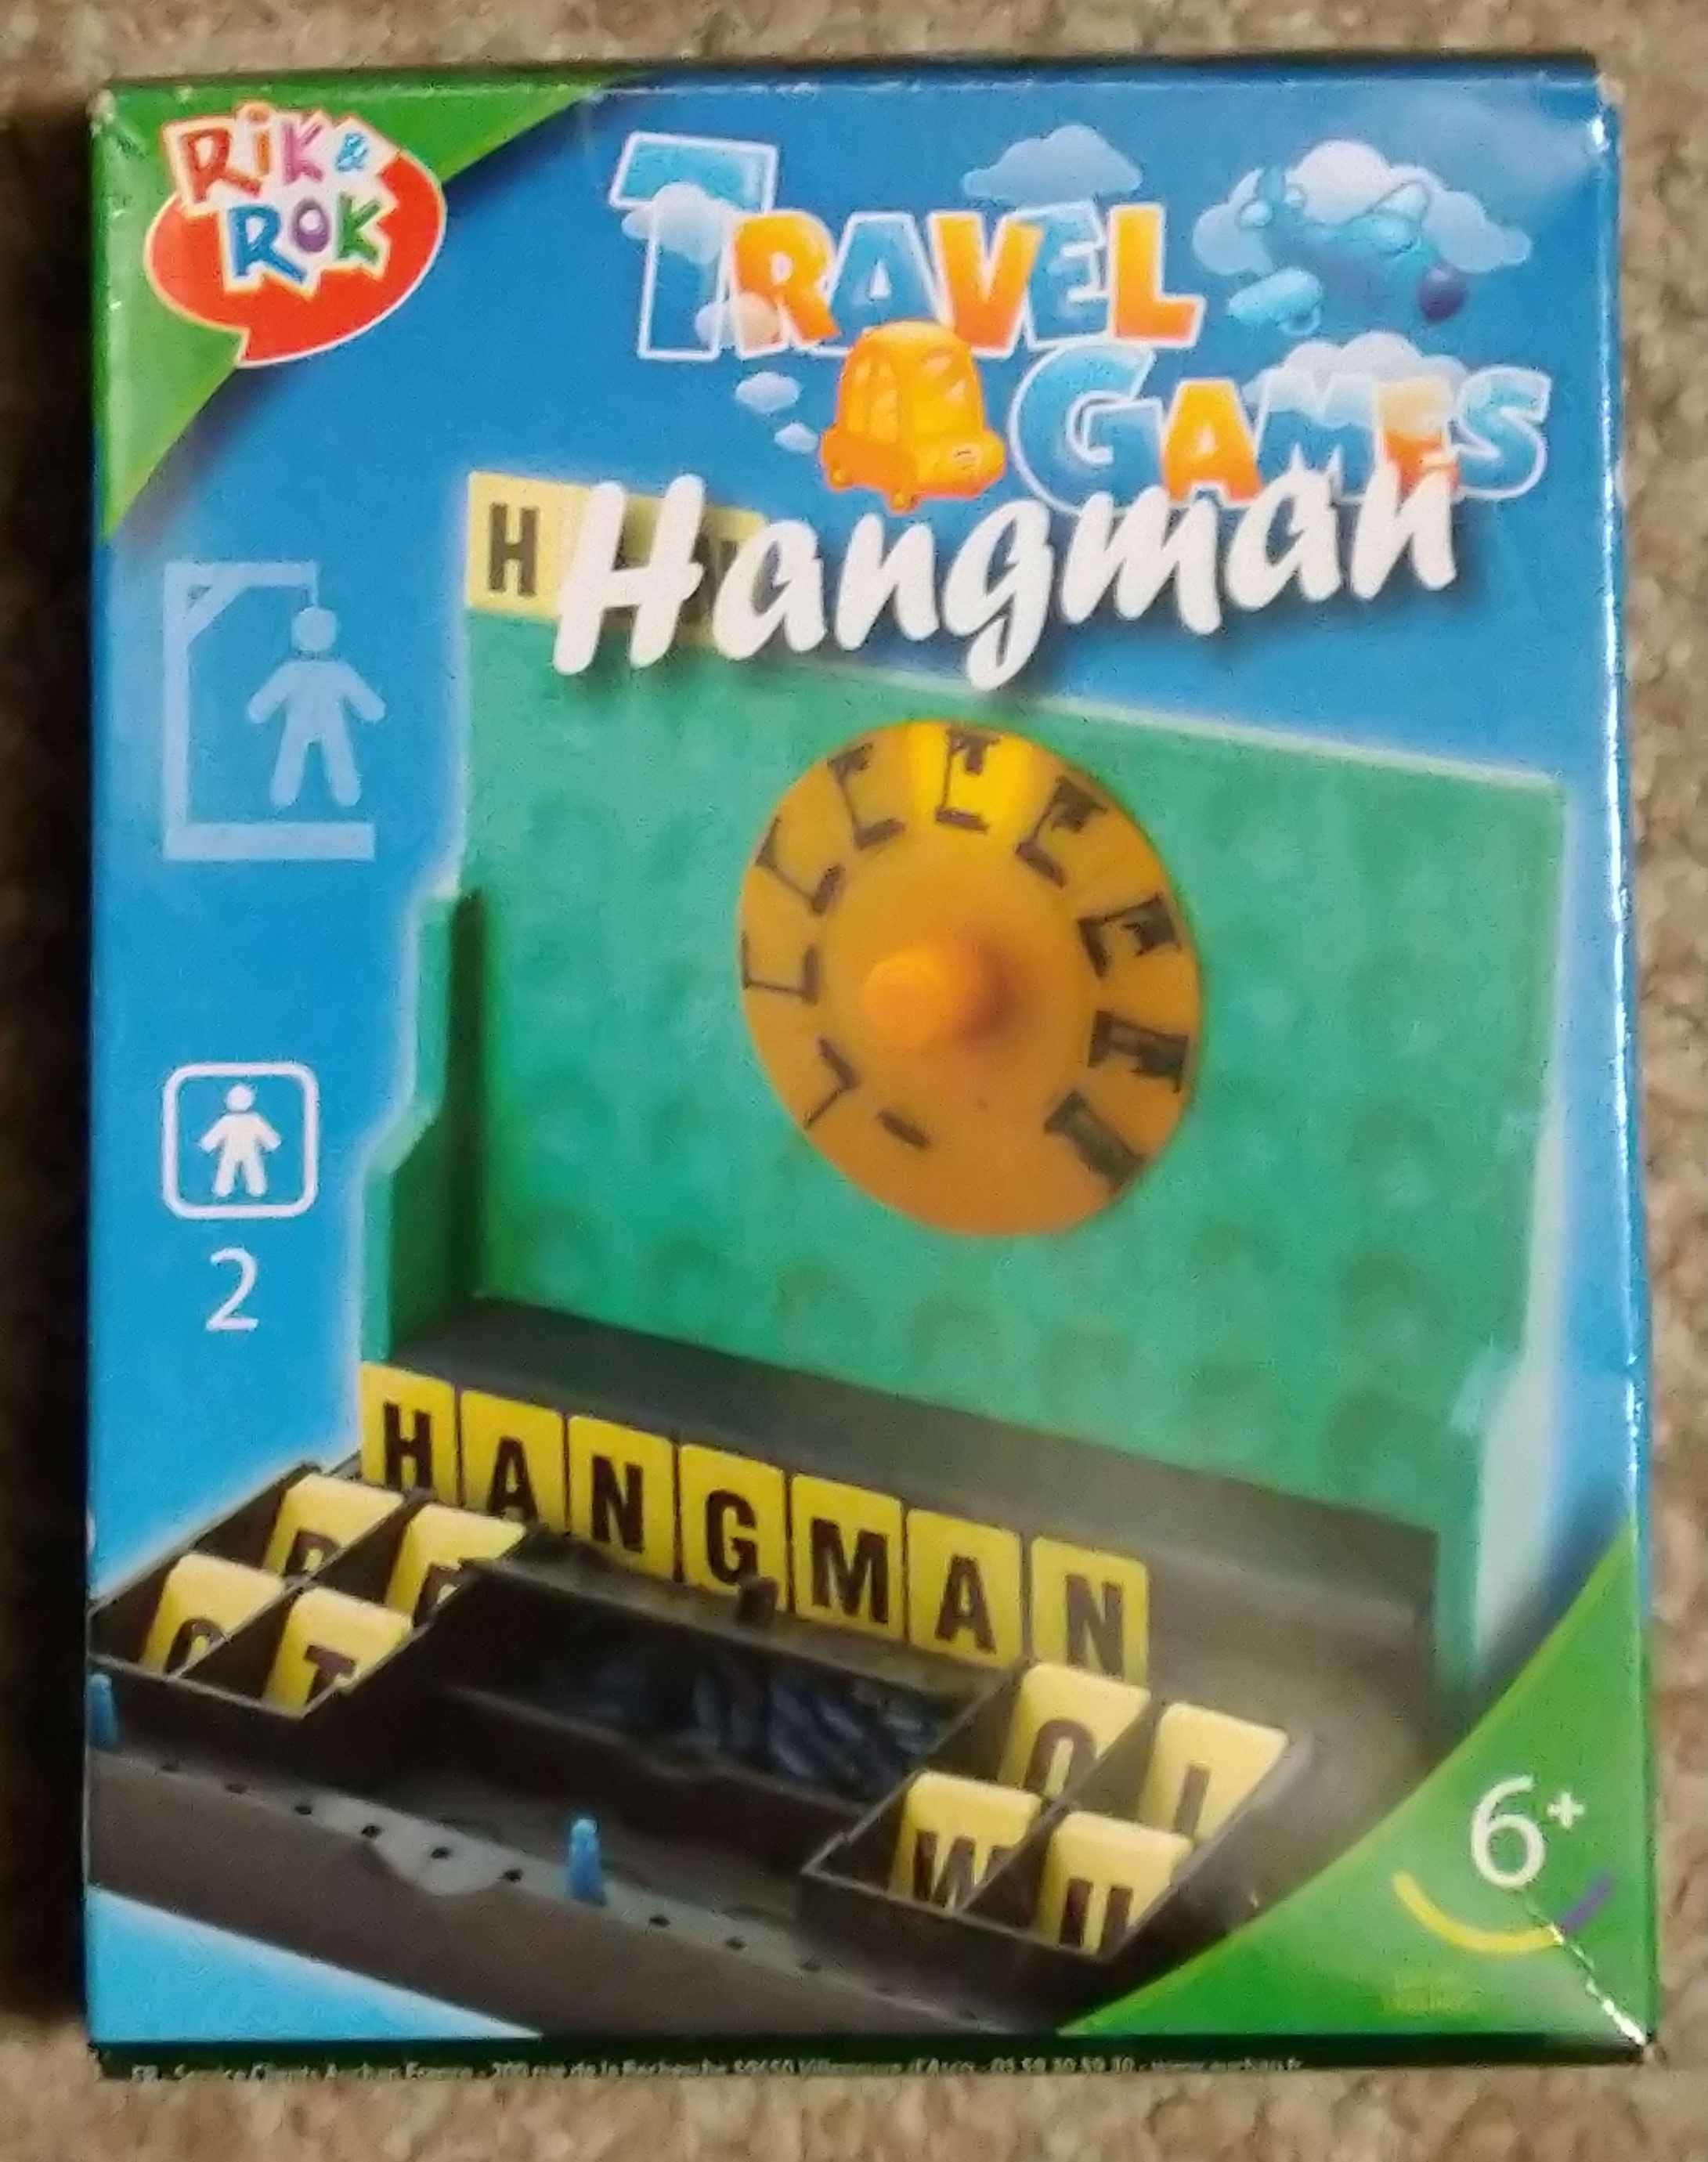 Podróżna gra planszowa Hangman TM Rik & Rok